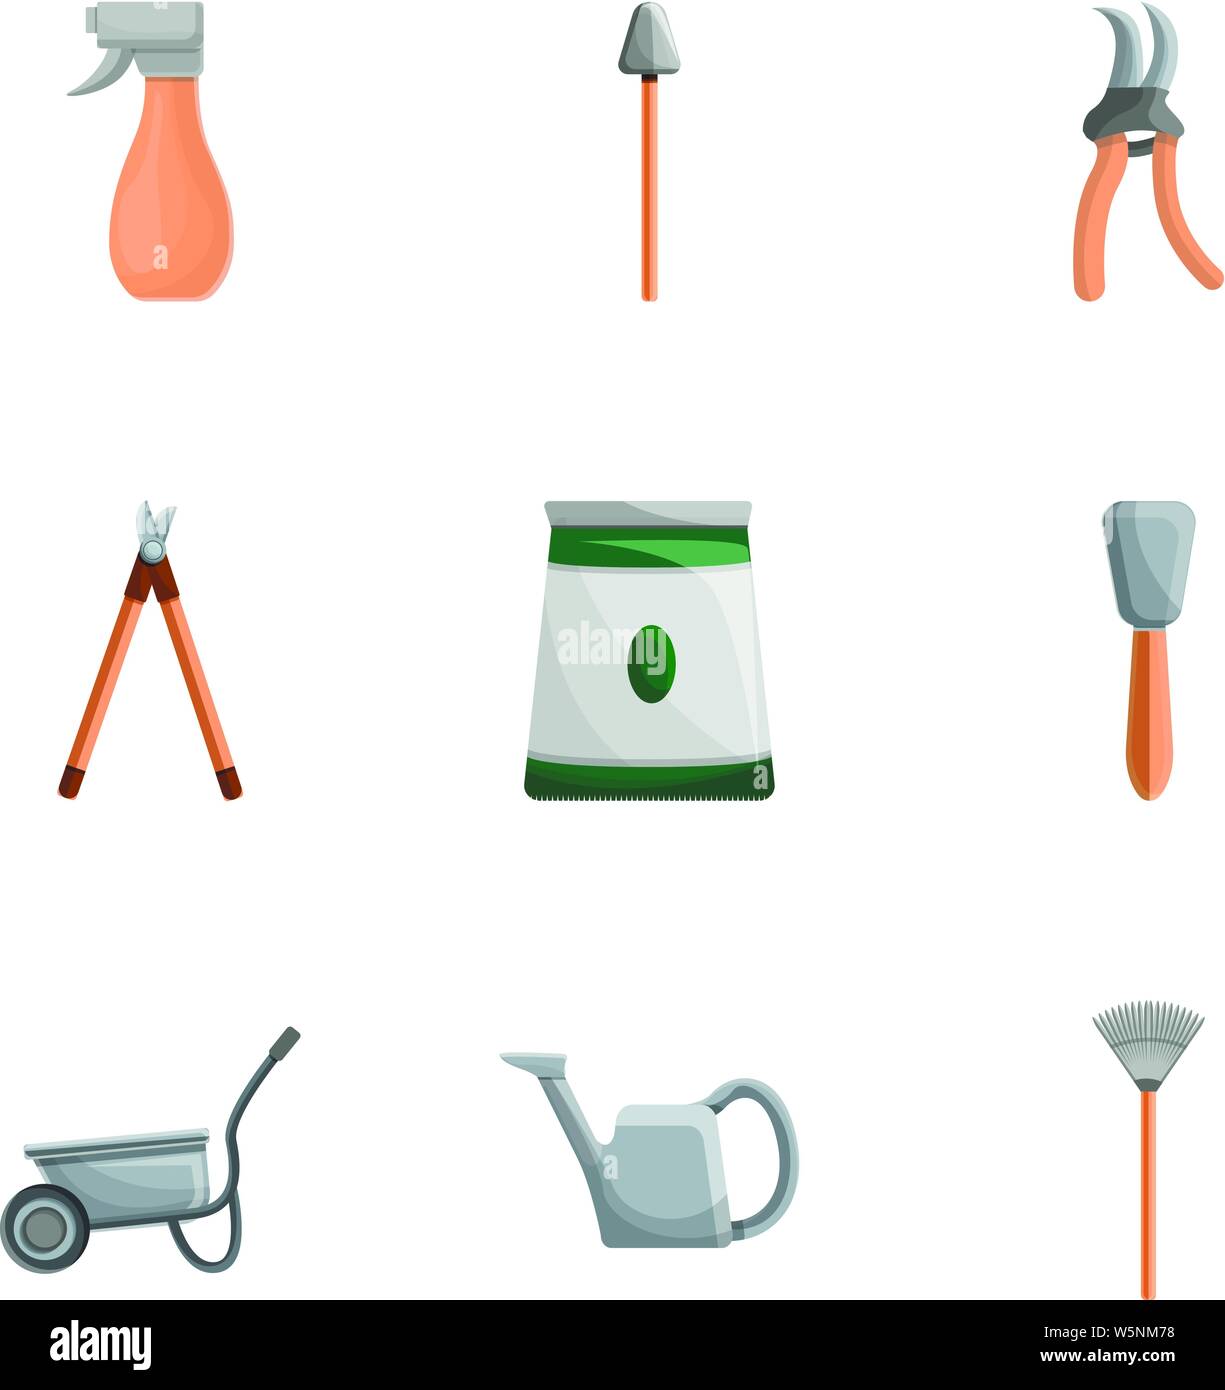 Garten tools Symbol gesetzt. Cartoon Set von 9 Gartengeräte Vector Icons  für Web Design auf weißem Hintergrund Stock-Vektorgrafik - Alamy